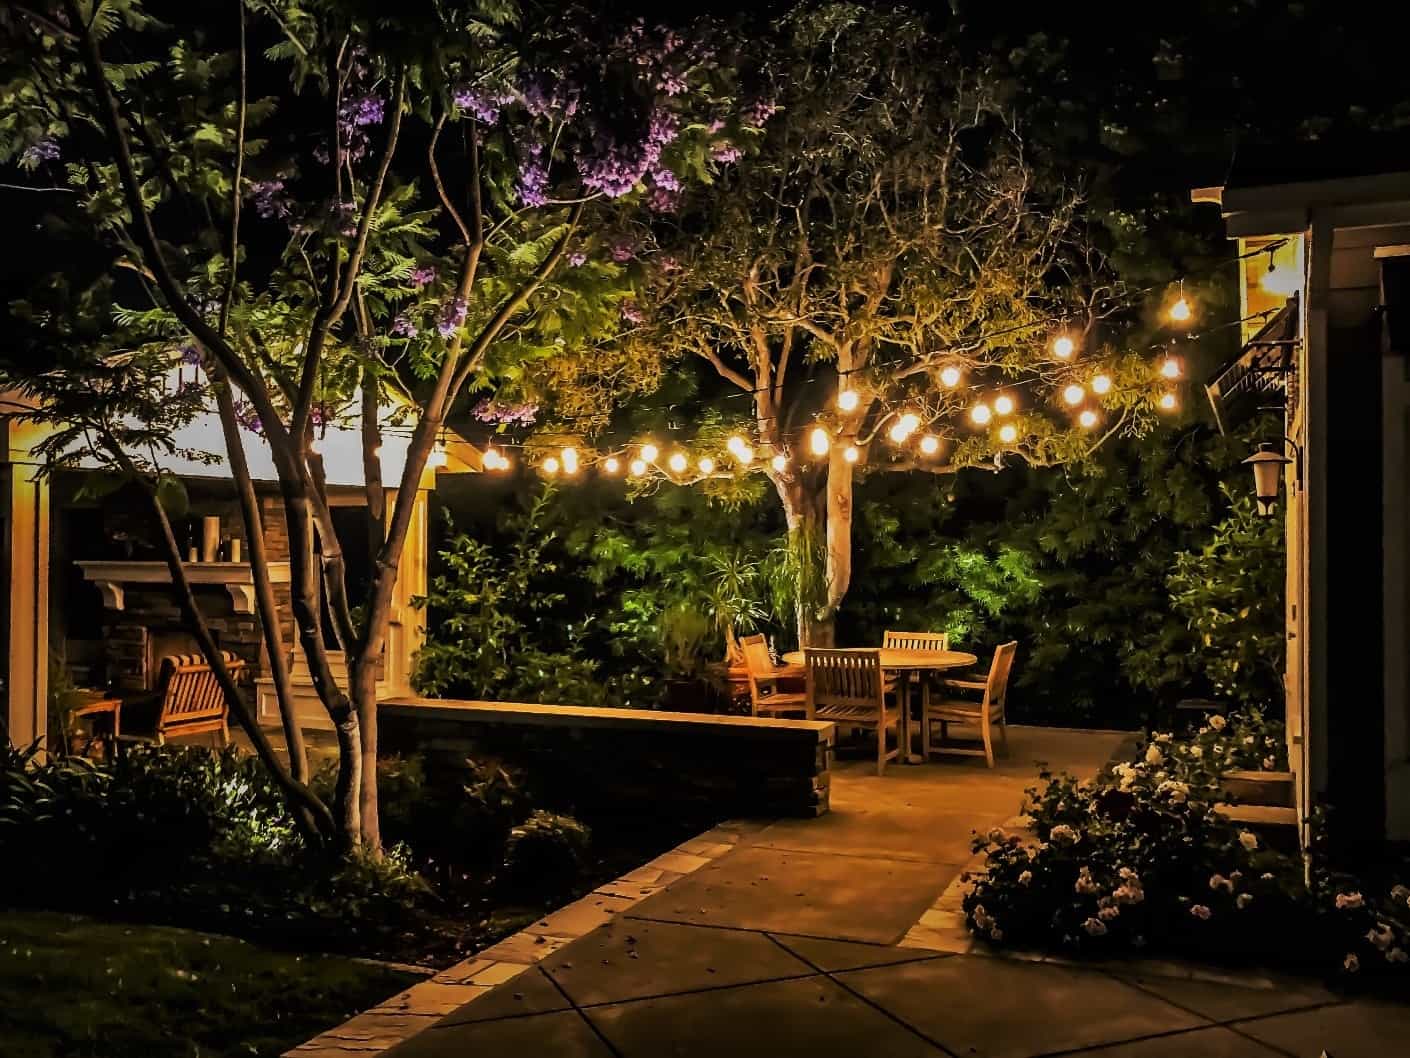 Đèn chiếu sáng cho khu vườn trên sân thượng